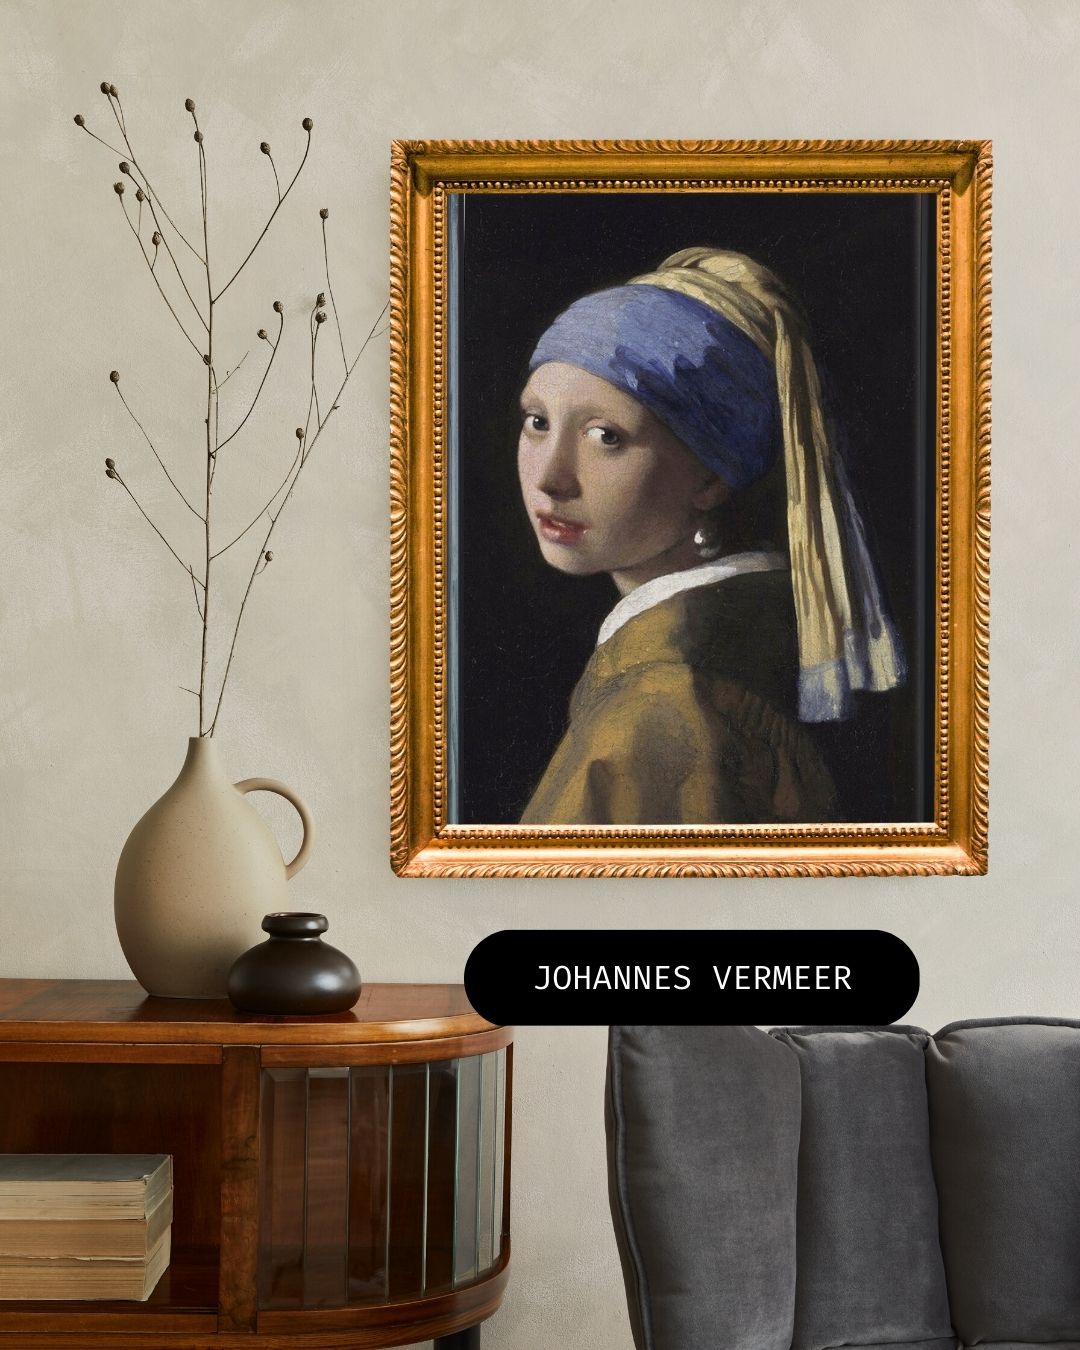 Hoe werd Johannes Vermeer beroemd en gebruikte hij een camera obscura